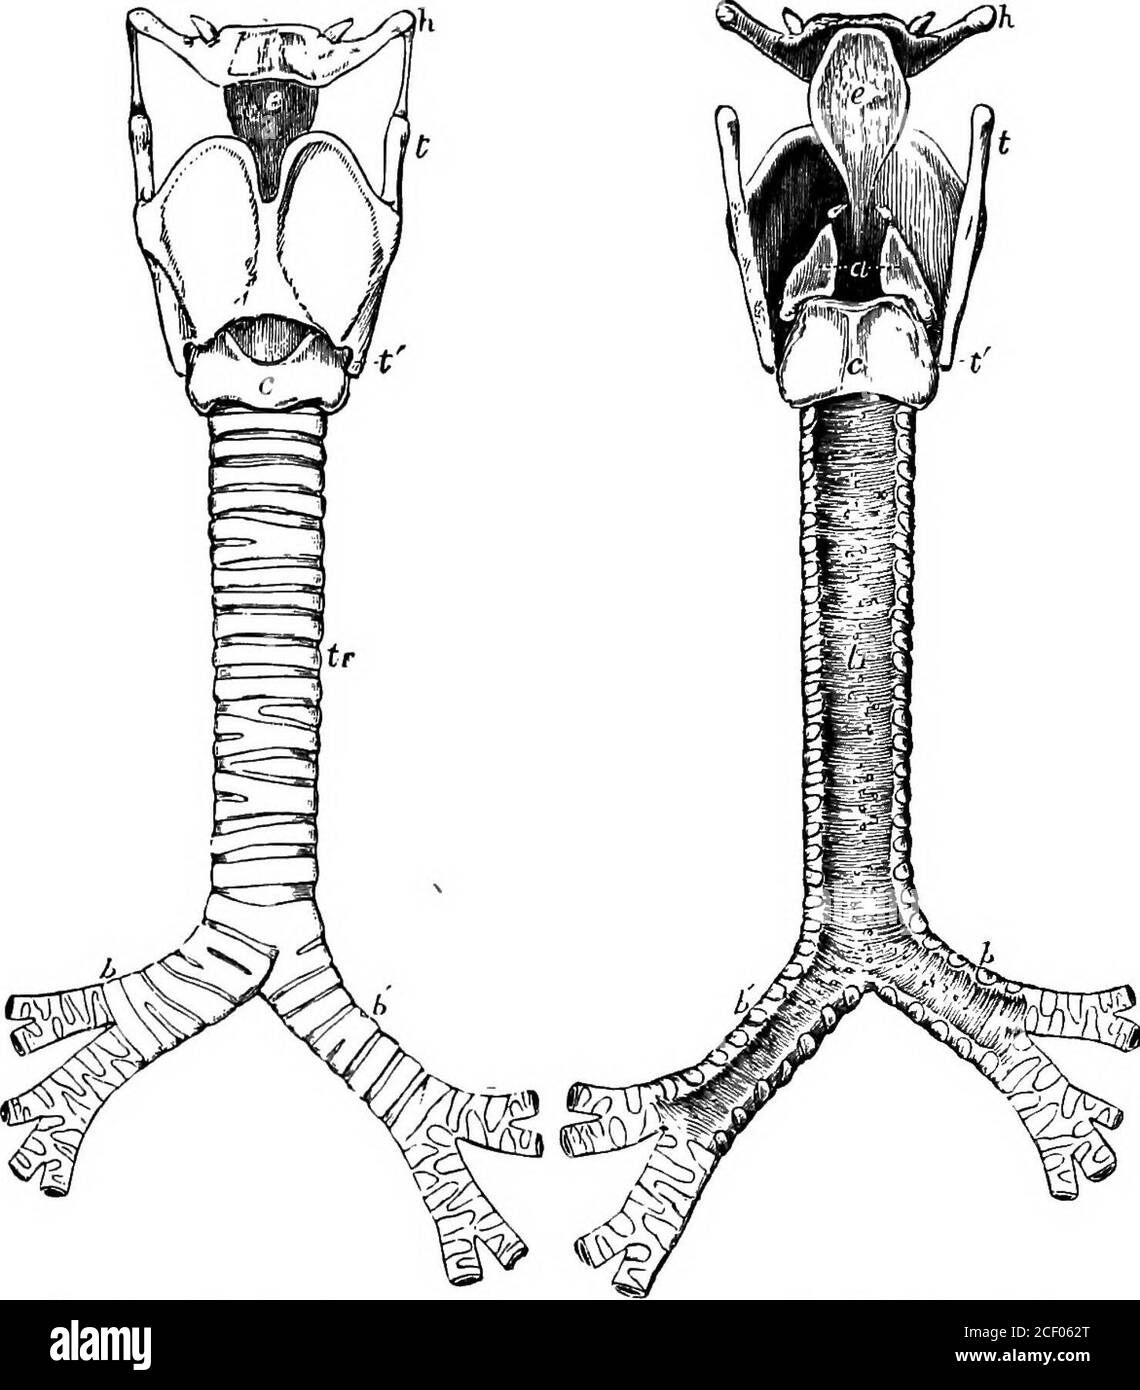 . Menschliche Physiologie. n Front, bilden die Prominenz bekannt als Adams Apfel, aber ist offen hinter, und wird durch Bänder und Muskeln mit einem kleinen U-förmigen Knochen, der Hyoid Knochen (Gr. Buchstabe V; und eidos, Form), befindet sich direkt darüber verbunden. Der zweite Knorpel ist der einzige komplette Ring im Windrohr. Es wird der Cricoidcnorpel (Gr. Krikos, Ring; und eidos, Form) genannt. Seine breiteste Portionist hinten, während er vorne so schmal ist, daß zwischen dem ersten und dem ersten Raum ein Raum gelassen wird, der durch das faserige Gewebe besetzt wird.natürlich wird dieser zweite Ring nicht so frei von der Stockfoto